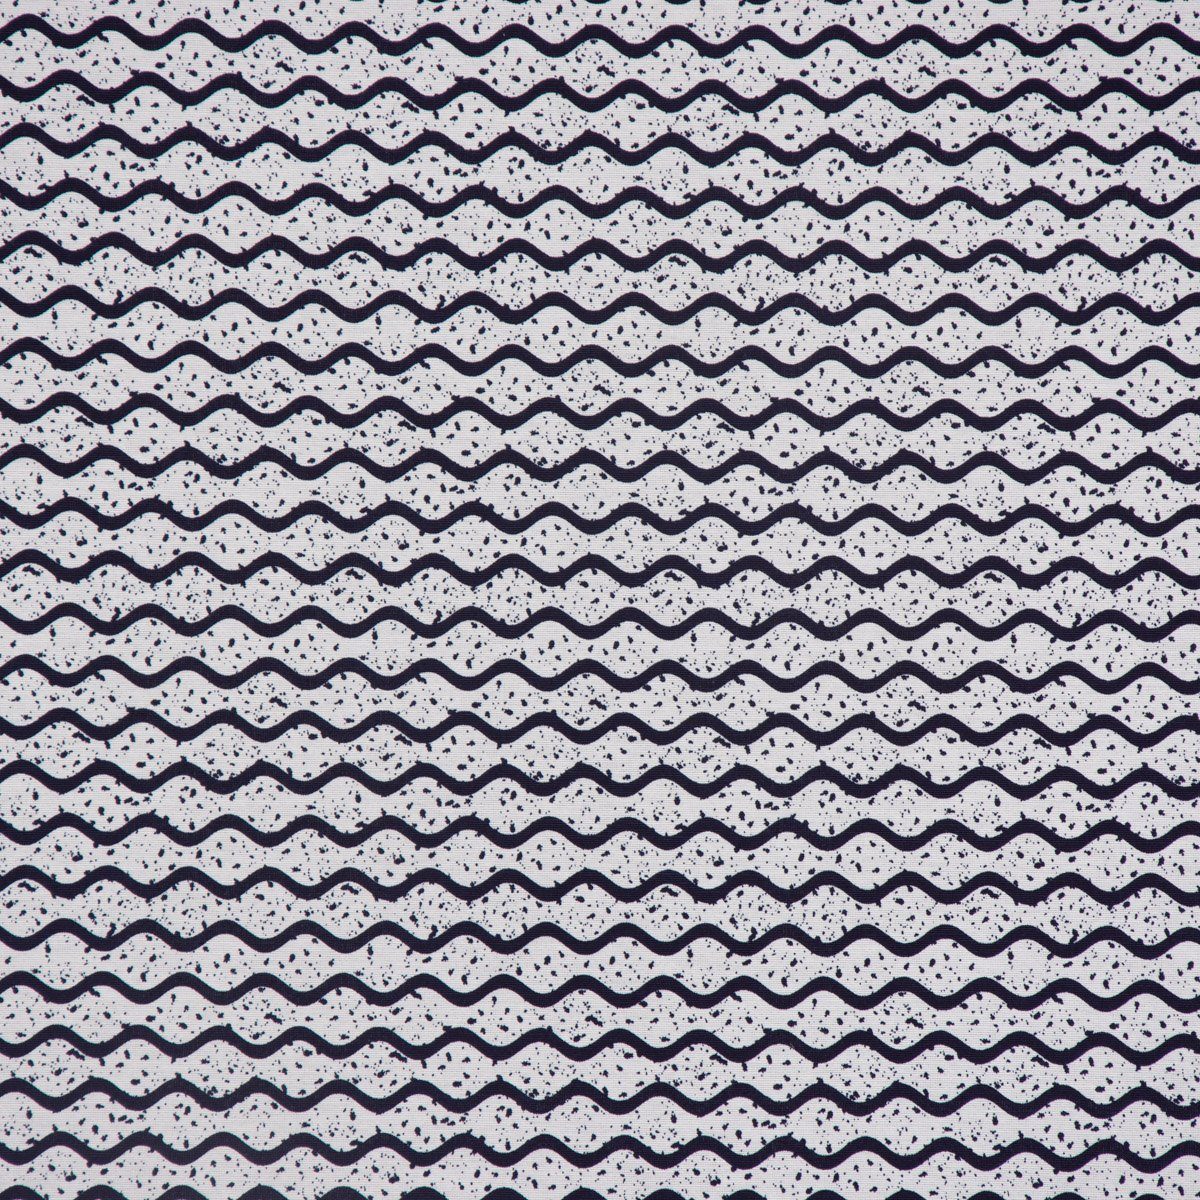 SCHÖNER LEBEN. Tischläufer SCHÖNER LEBEN. Punkte Tischläufer handmade weiß dunkelblau 40x160cm, Wellen